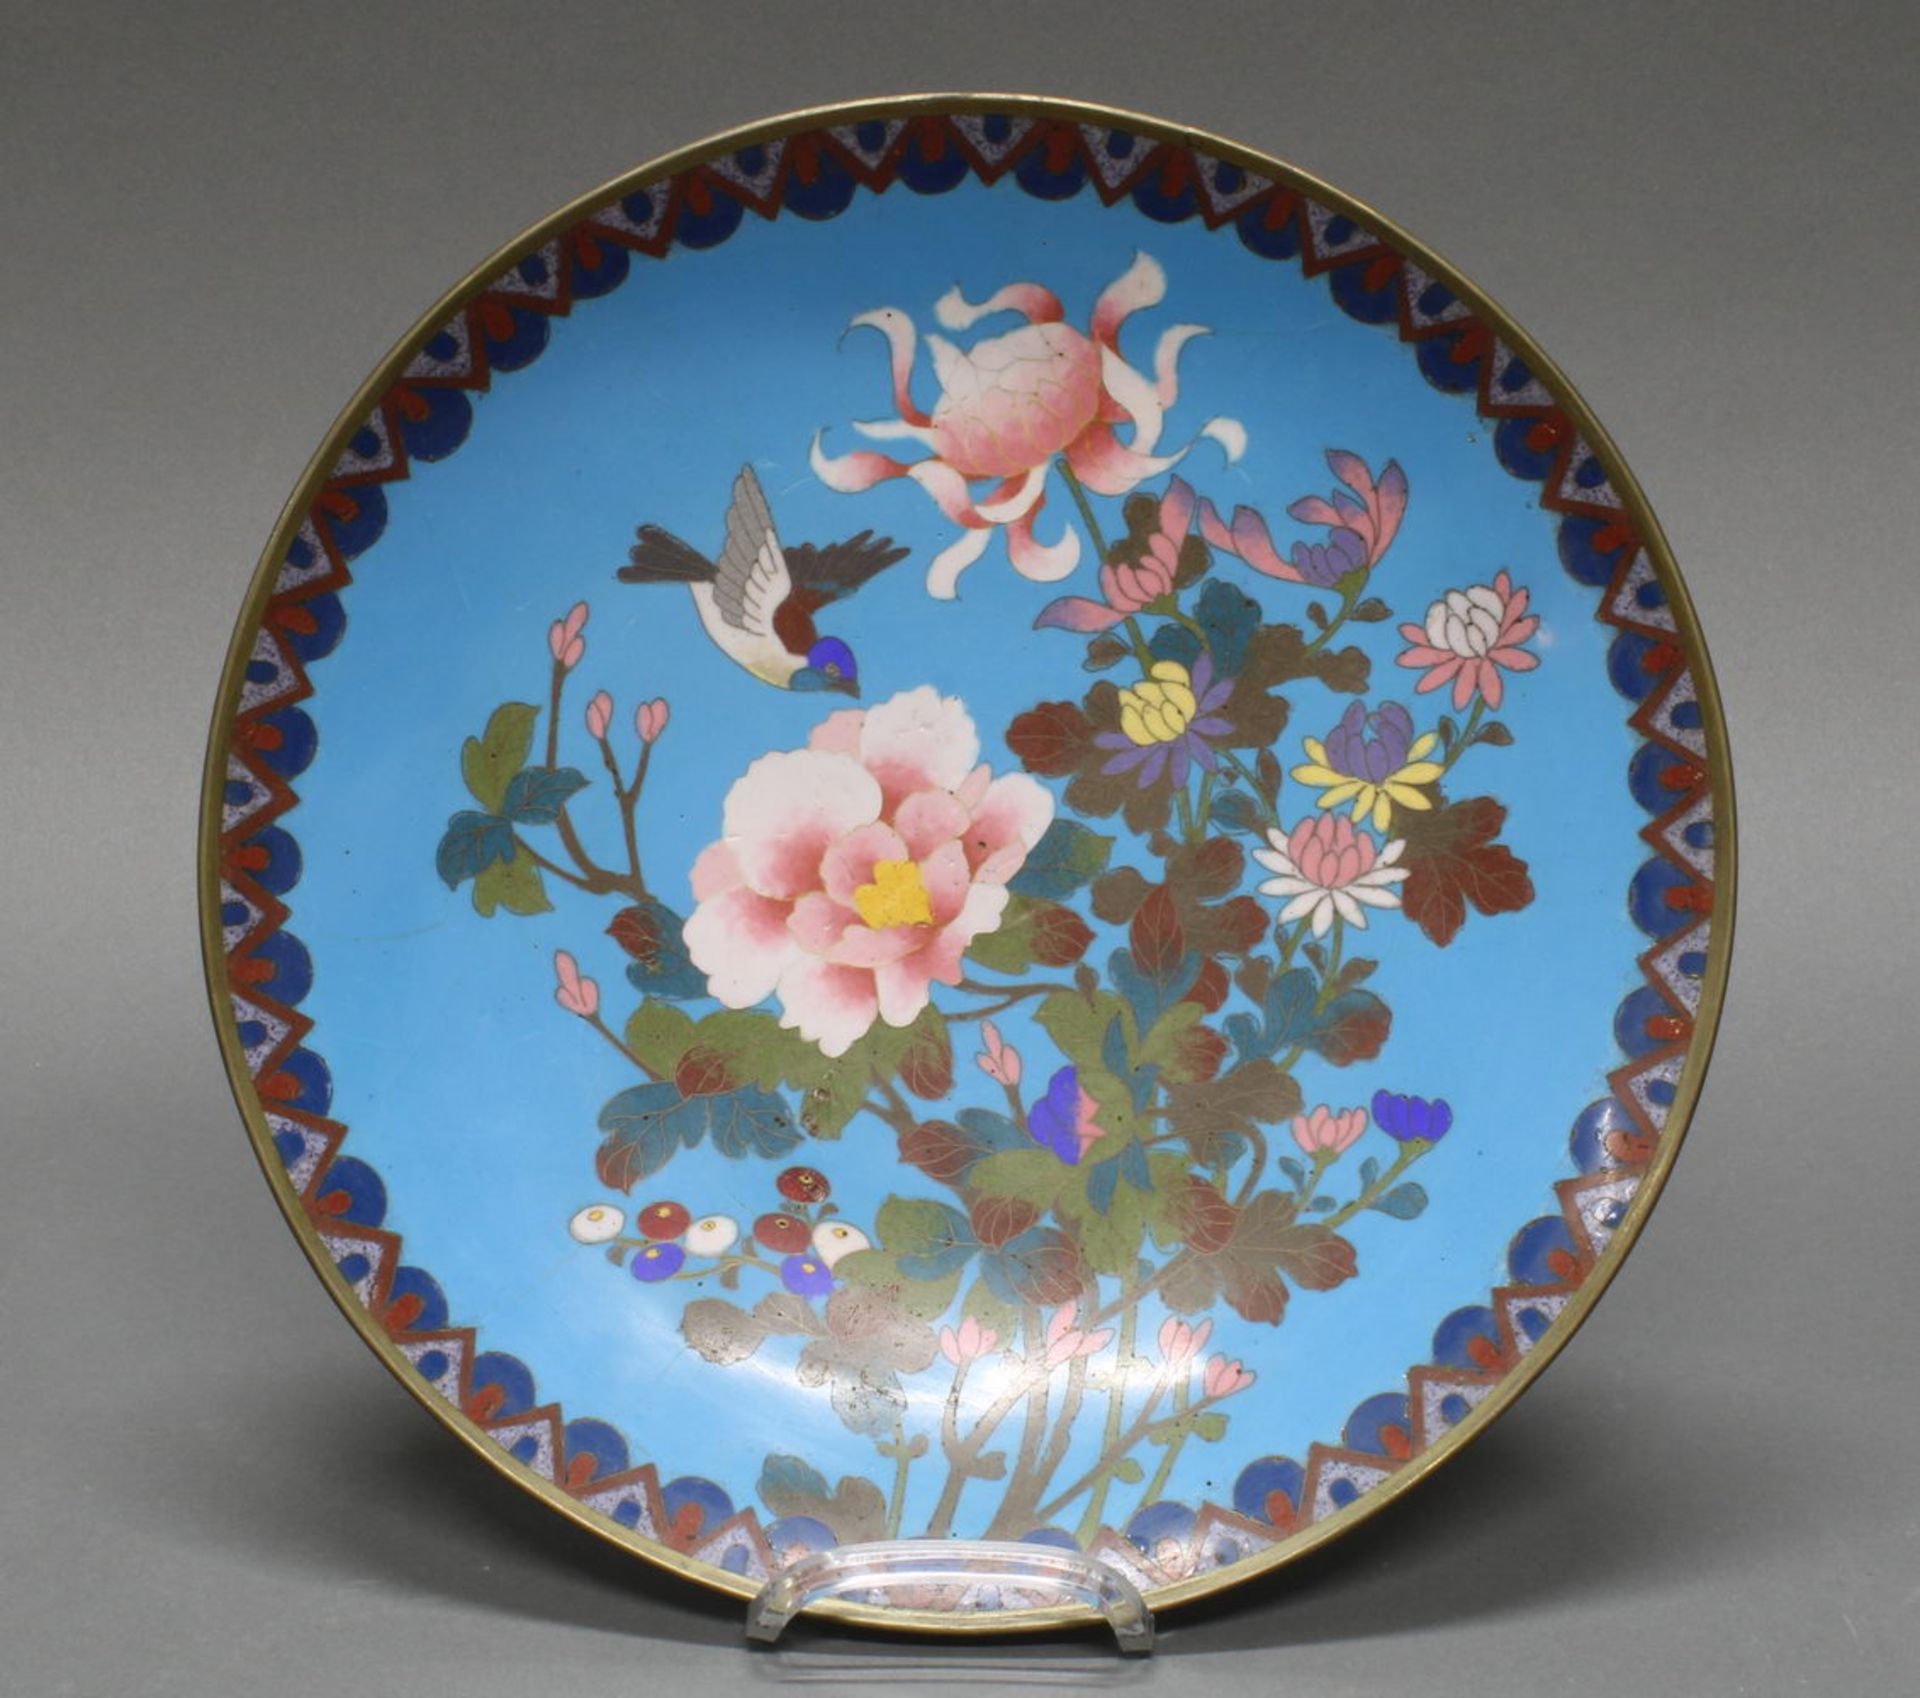 Platte, China, 20. Jh., Cloisonné, farbiger Dekor mit Blüten und einem Vogel, ø 30 cm, Haarrisse